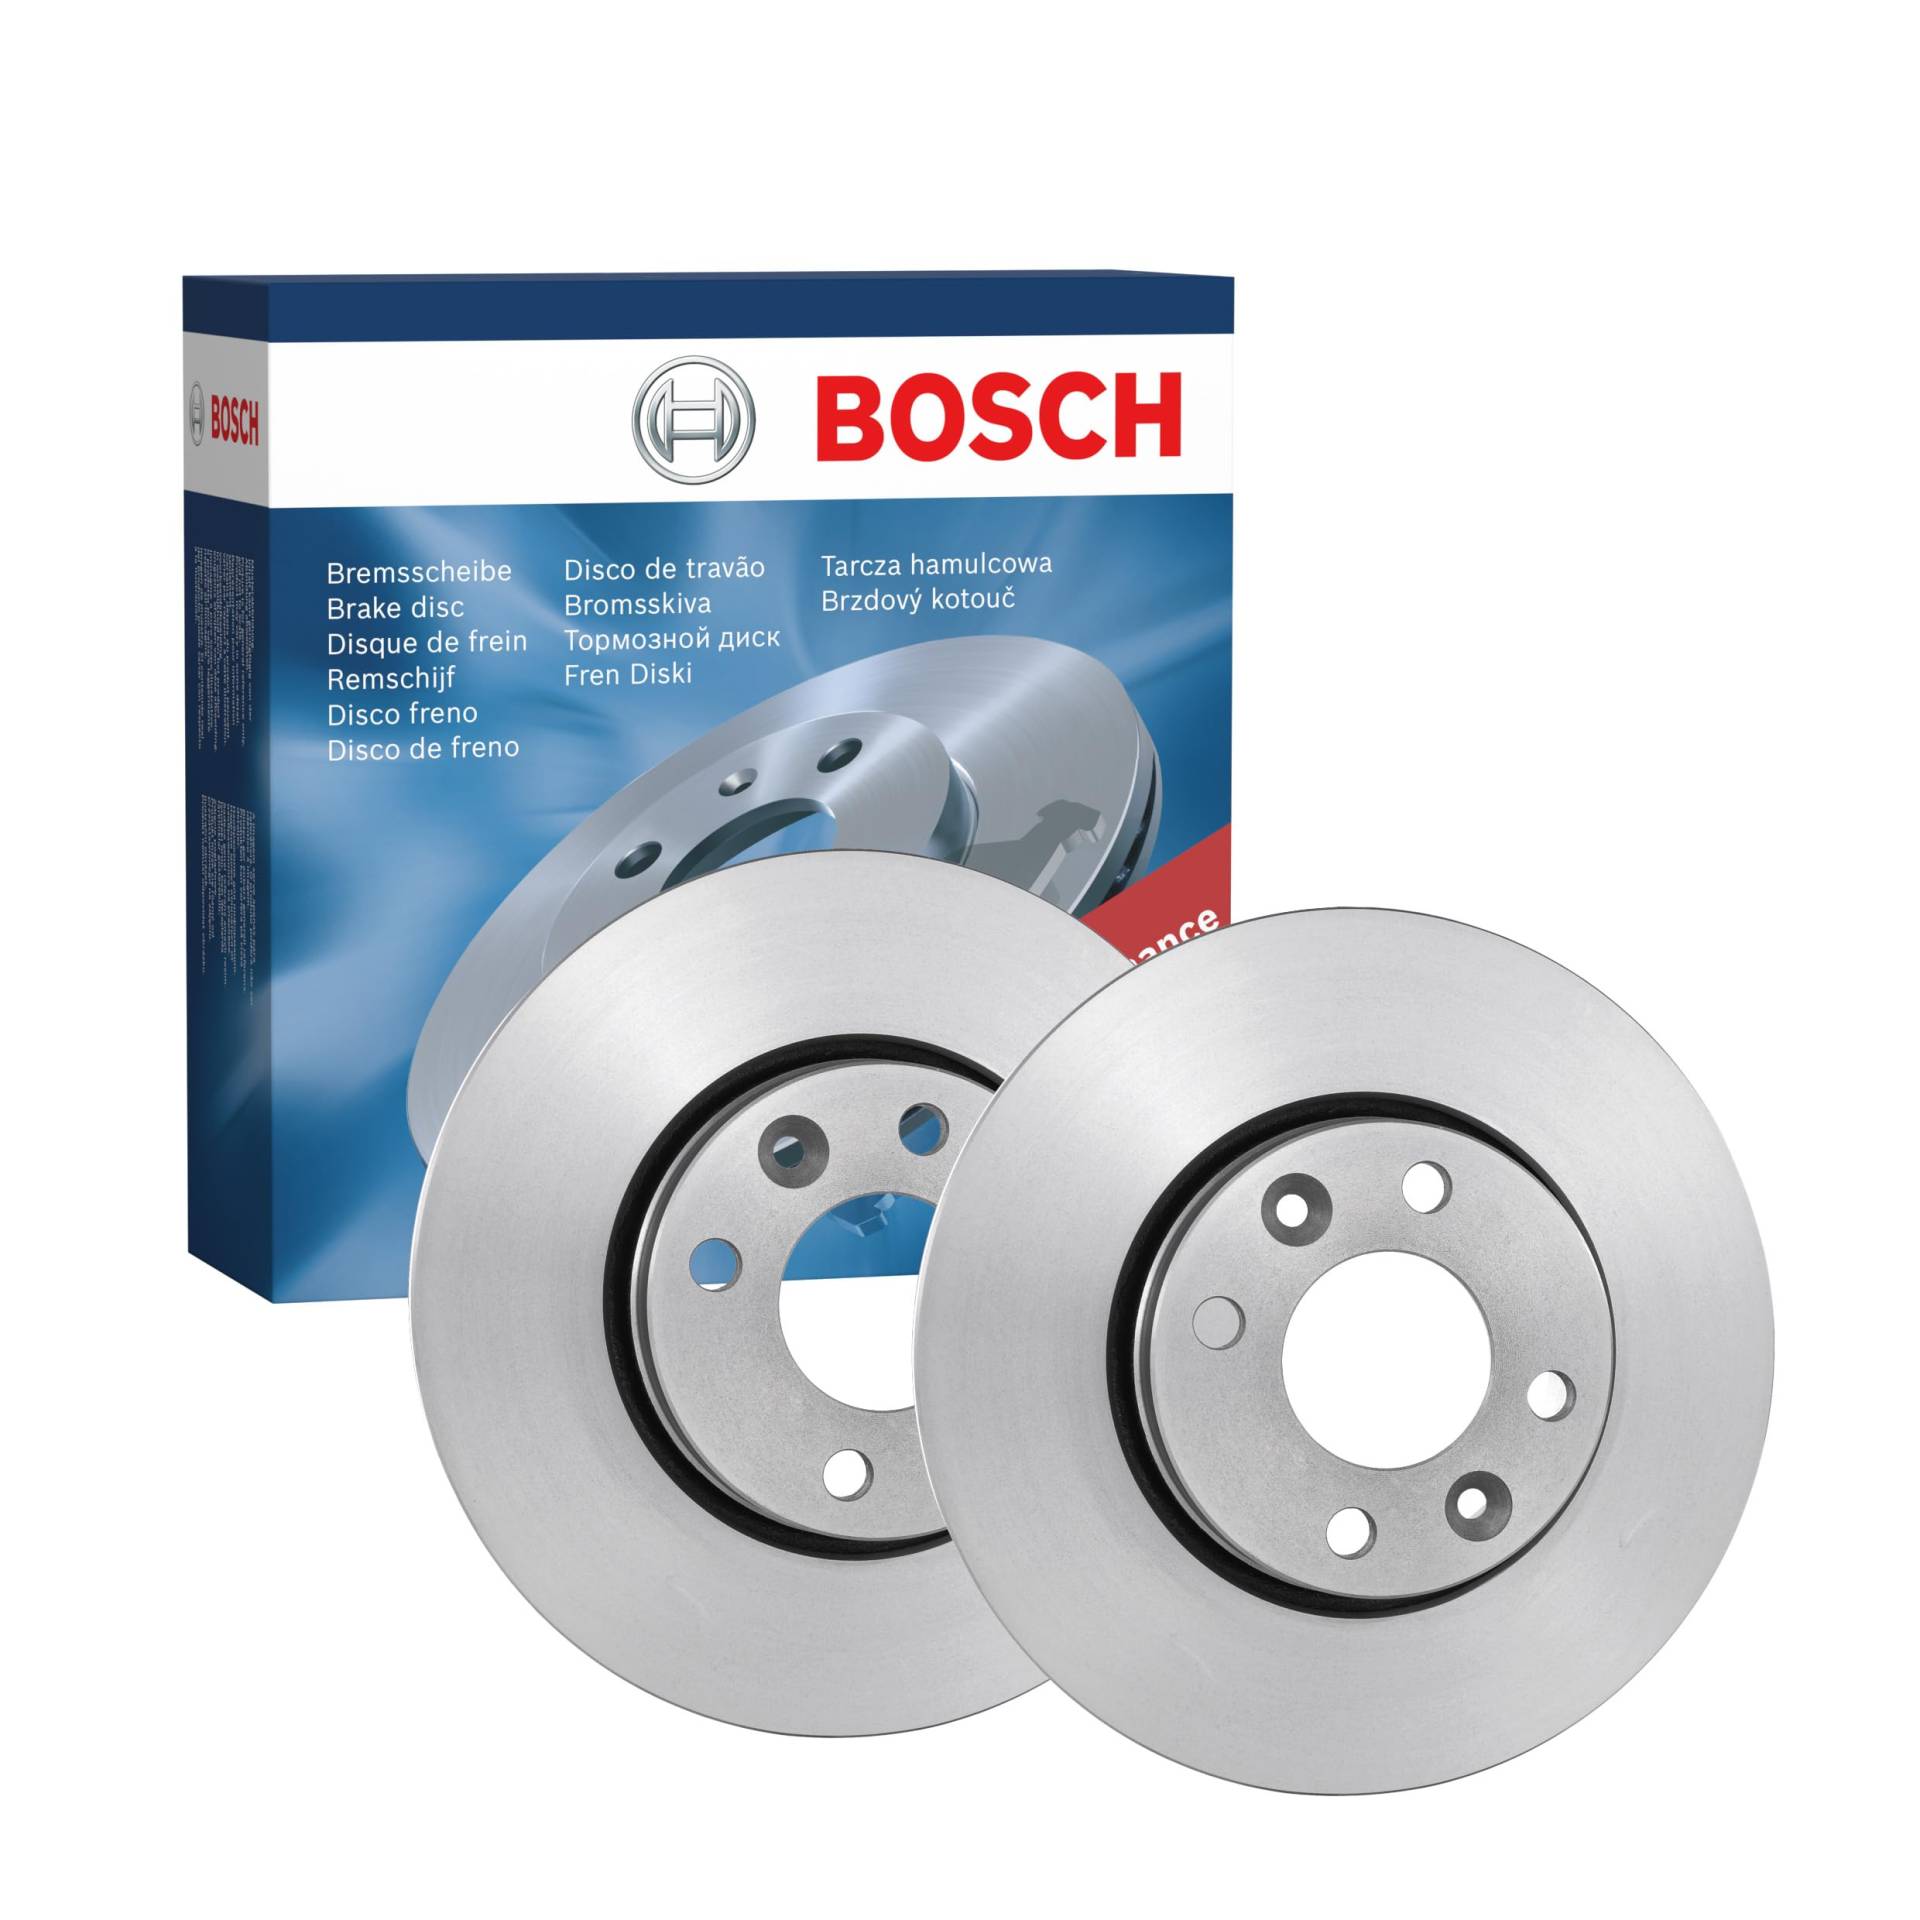 Bosch BD1033 Bremsscheiben - Vorderachse - ECE-R90 Zertifizierung - zwei Bremsscheiben pro Set von Bosch Automotive